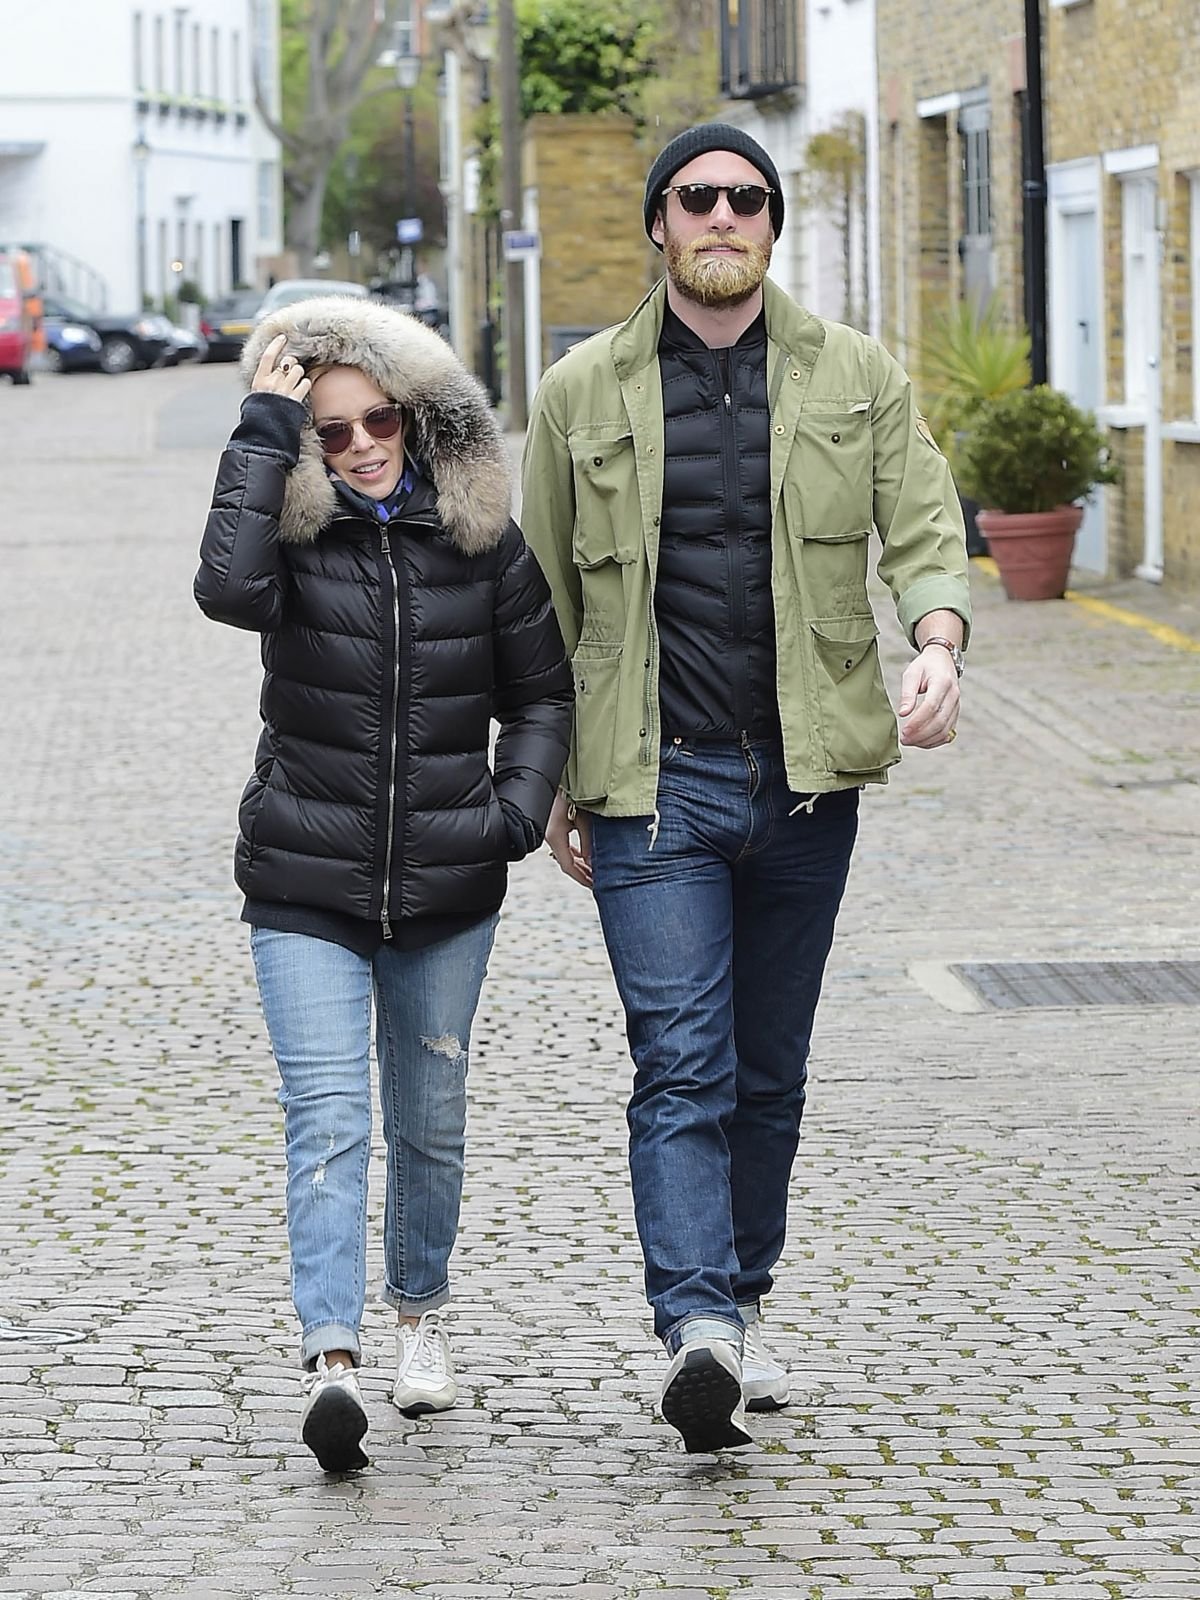 Кайли Миноуг гуляет с бойфрендом по улицам Лондона